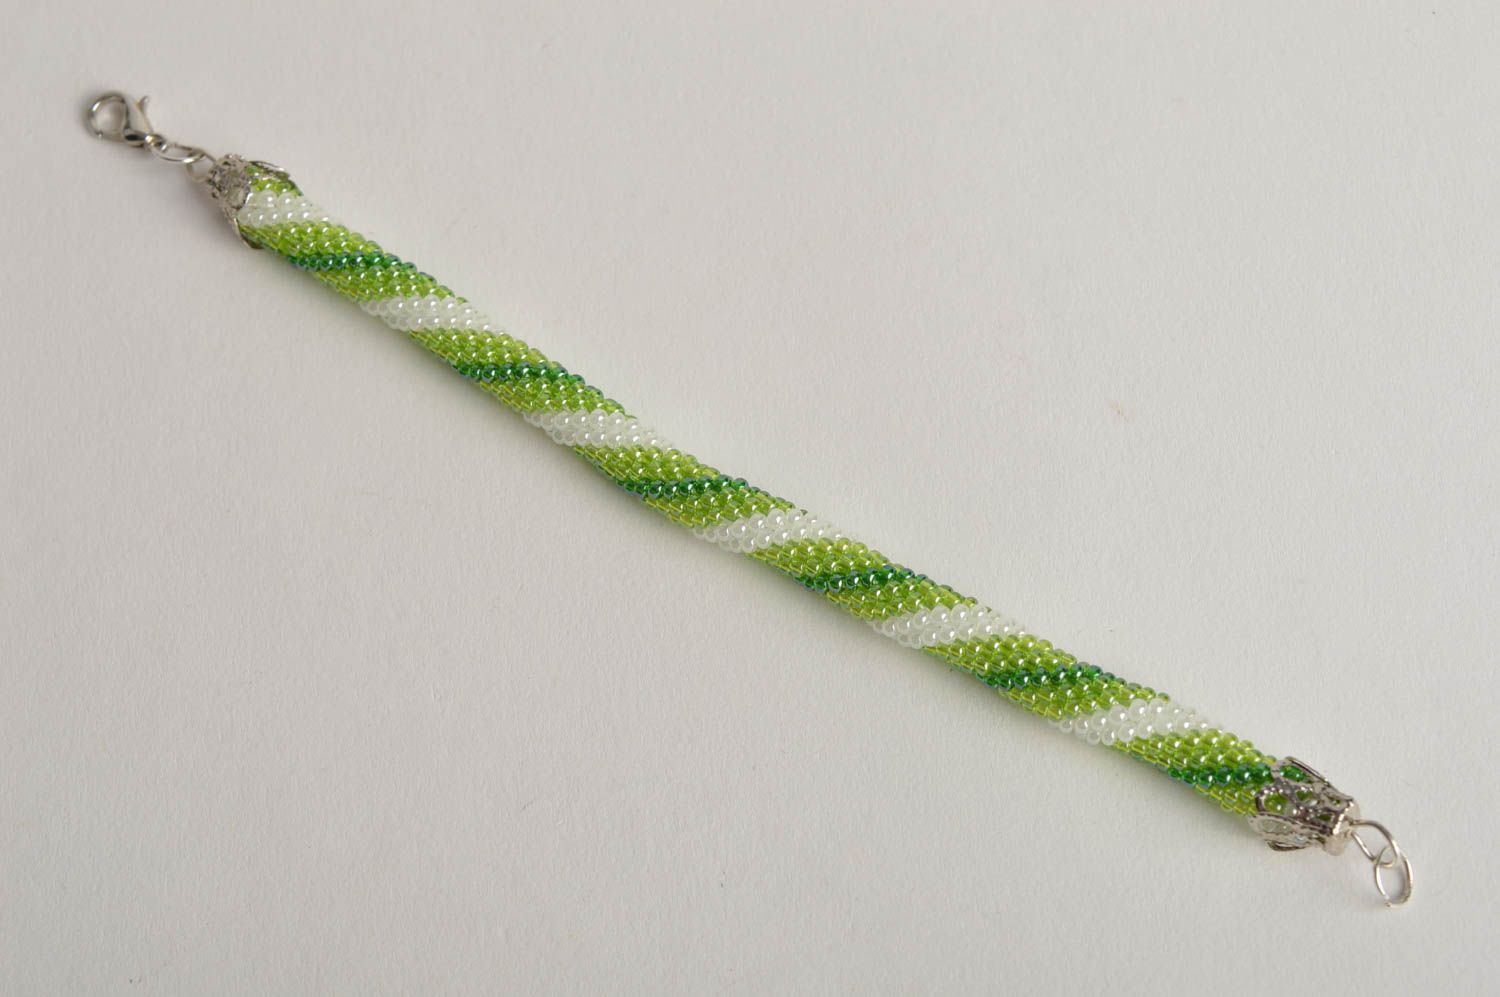 Браслет из бисера жгут хэнд мэйд модный браслет зеленый украшение из бисера фото 2